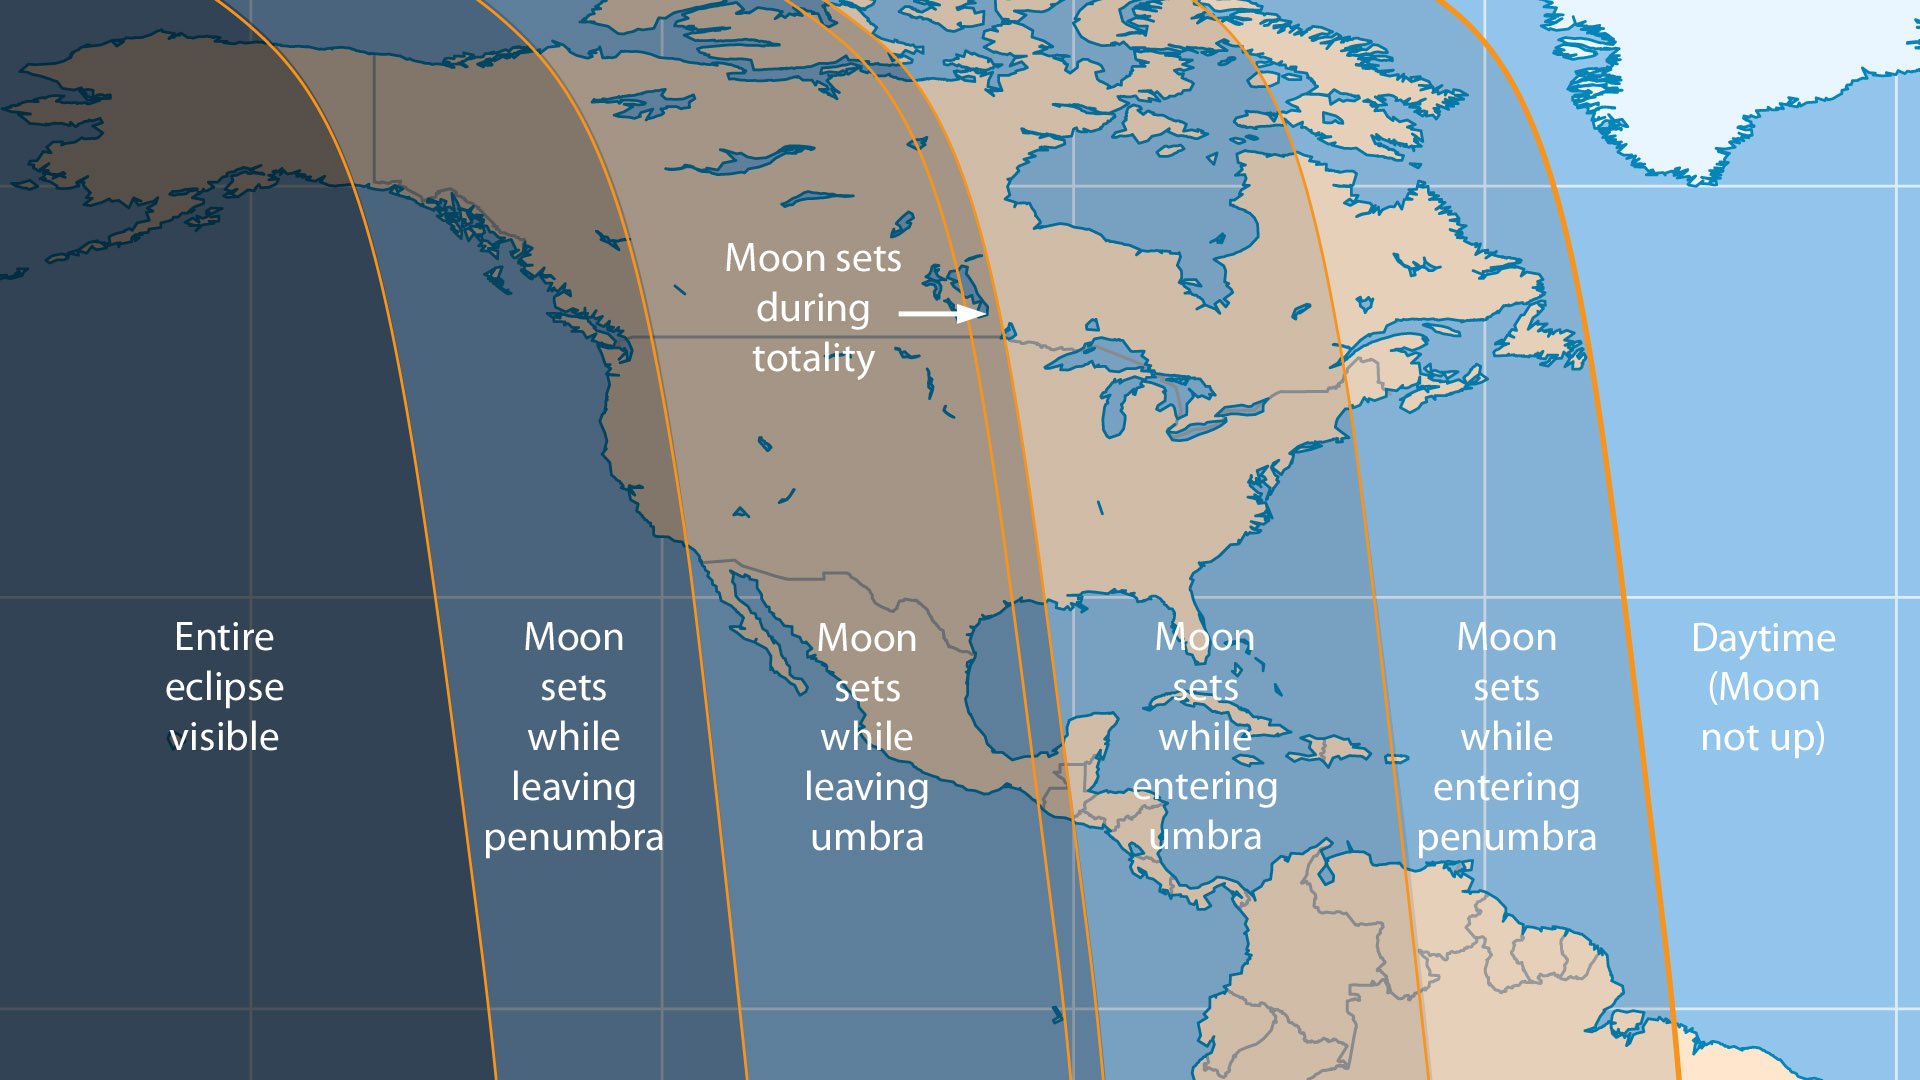 April 2015 lunar eclipse visibility